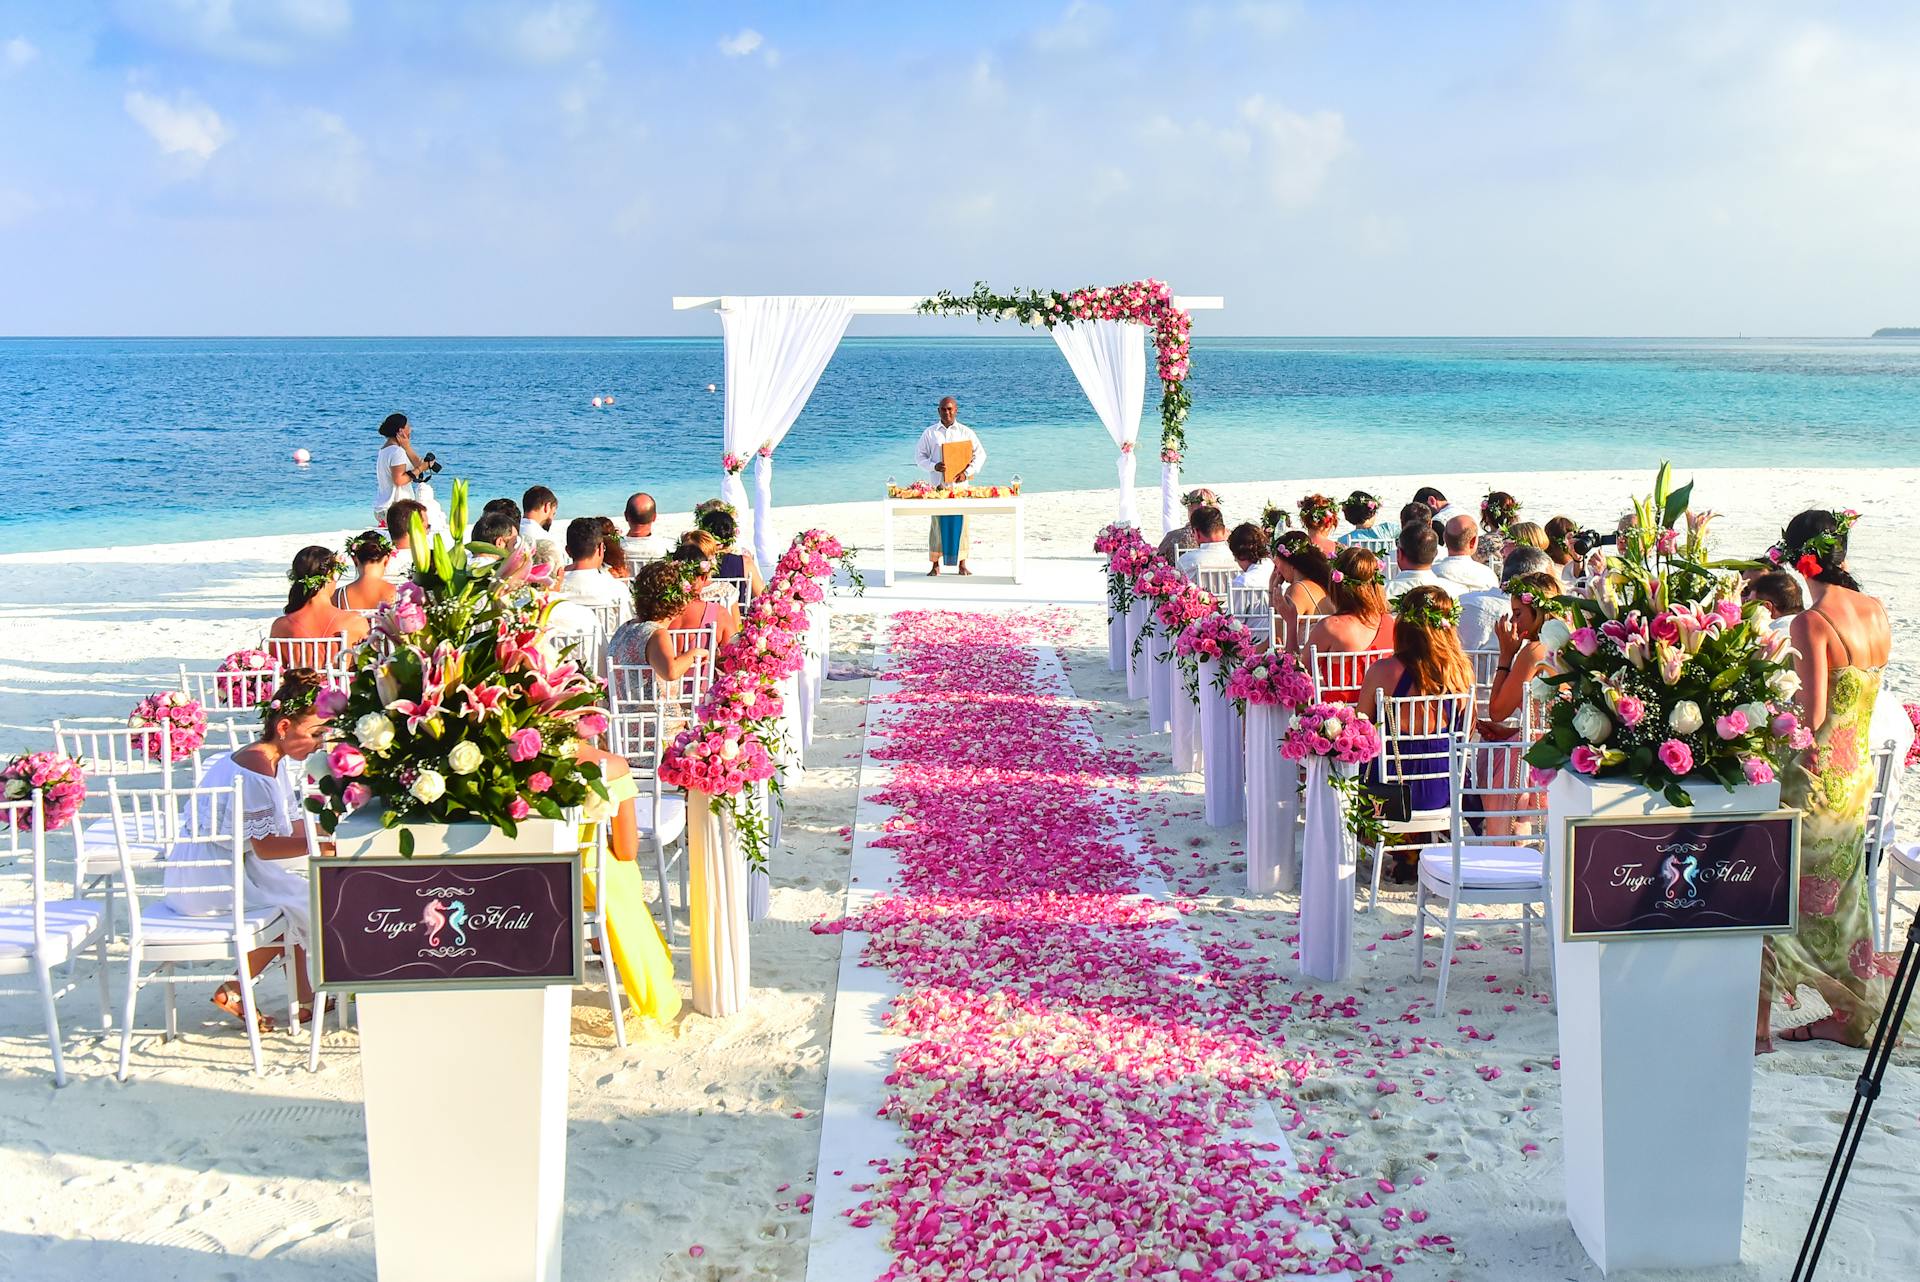 Una boda en la playa | Fuente: Pexels